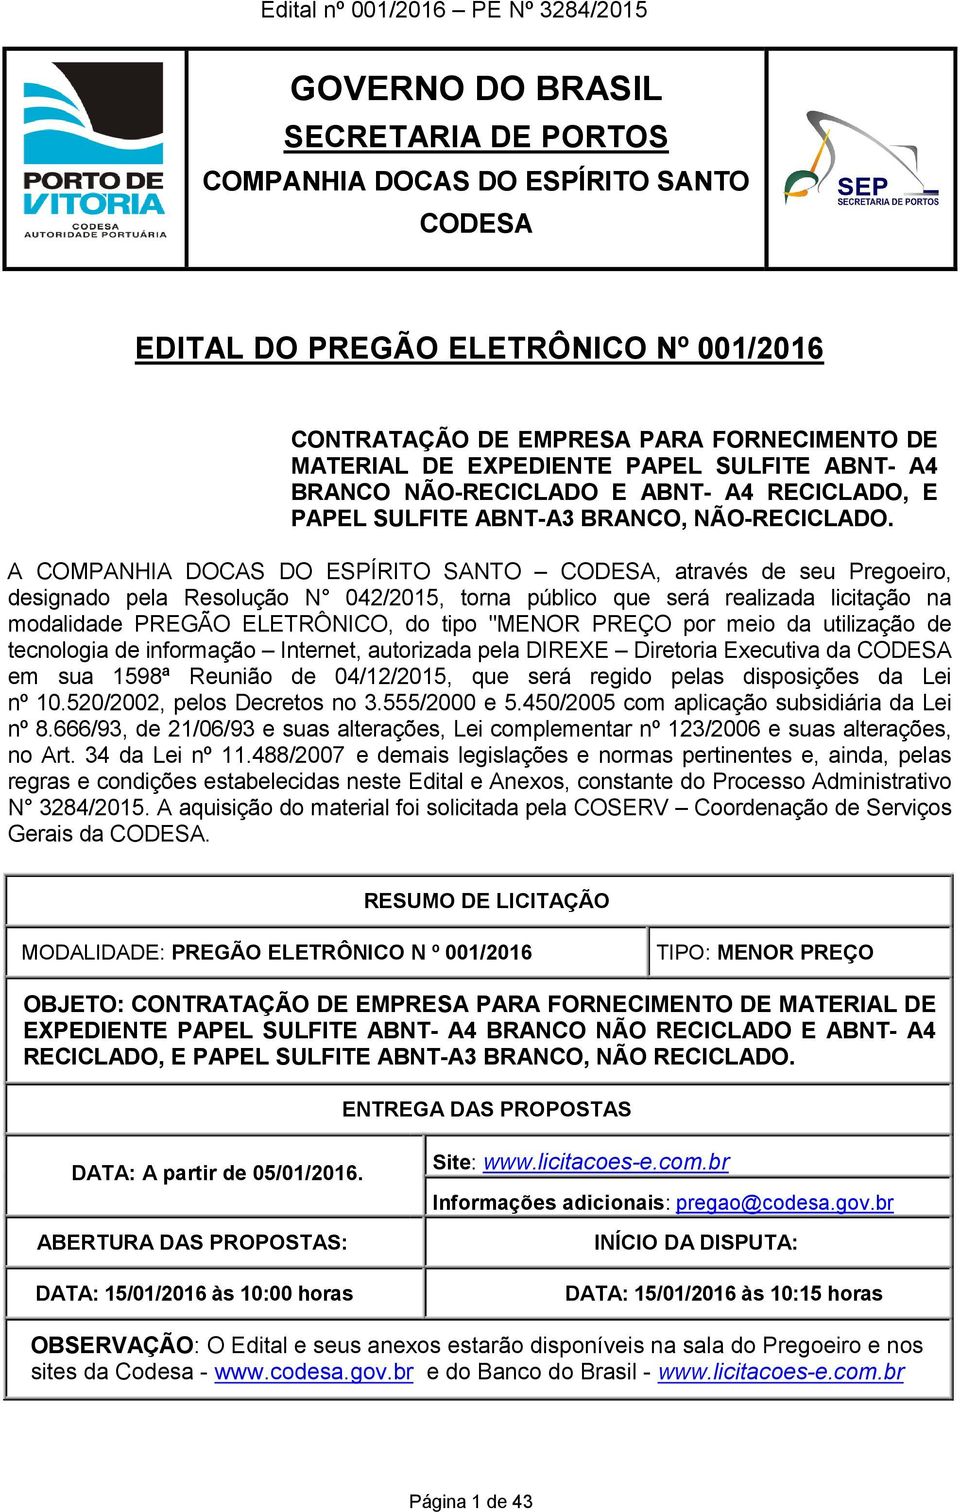 A COMPANHIA DOCAS DO ESPÍRITO SANTO CODESA, através de seu Pregoeiro, designado pela Resolução N 042/2015, torna público que será realizada licitação na modalidade PREGÃO ELETRÔNICO, do tipo "MENOR